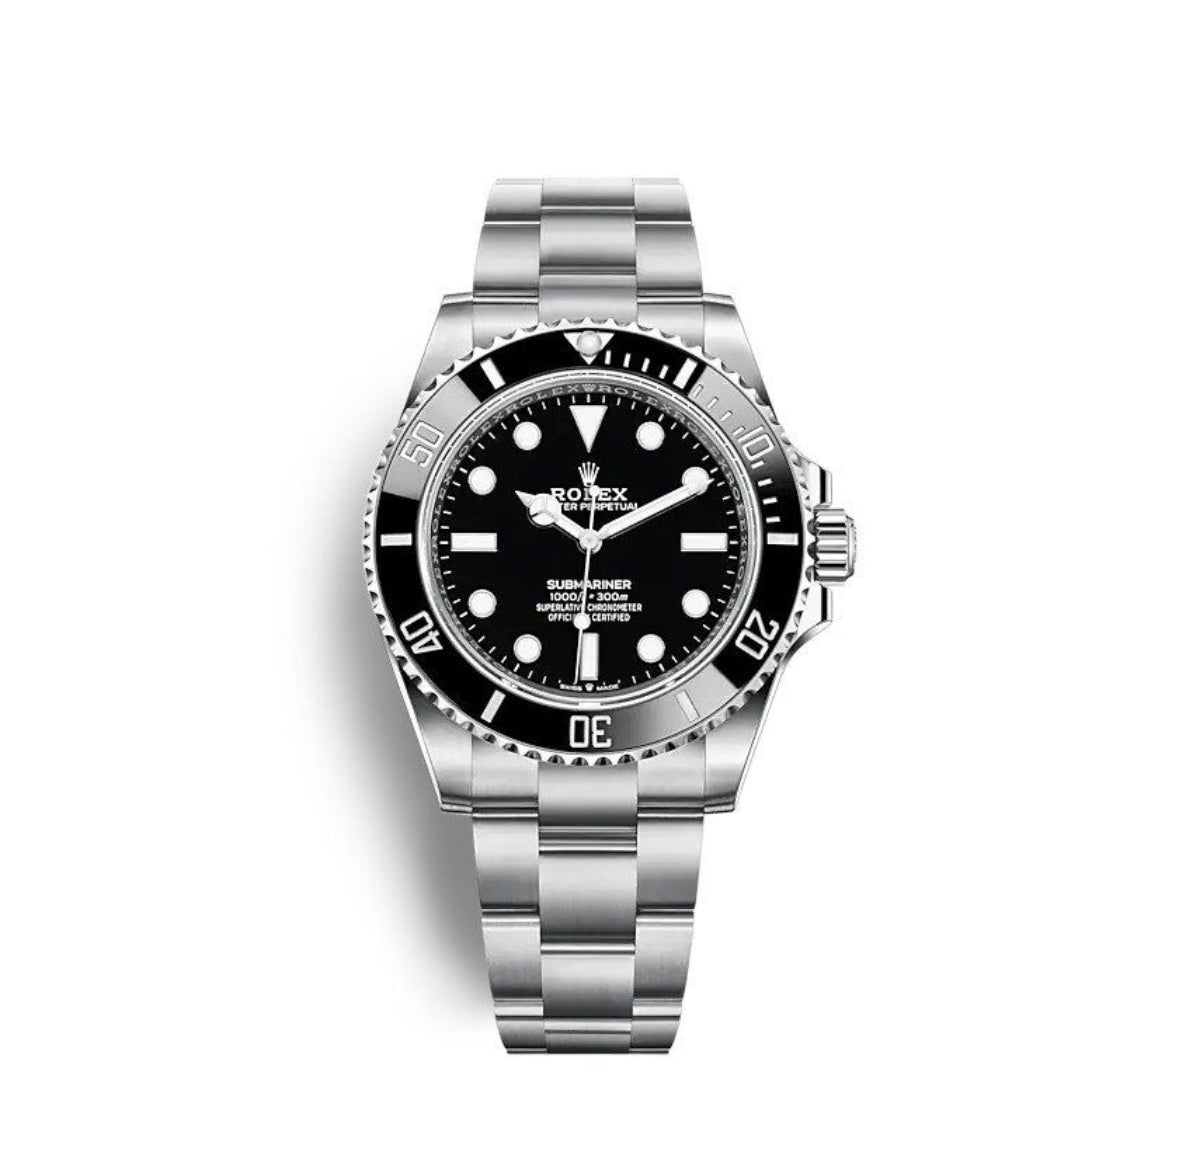 Replica Rolex Submariner Silver/Black No Date - IP Empire Replica Watches